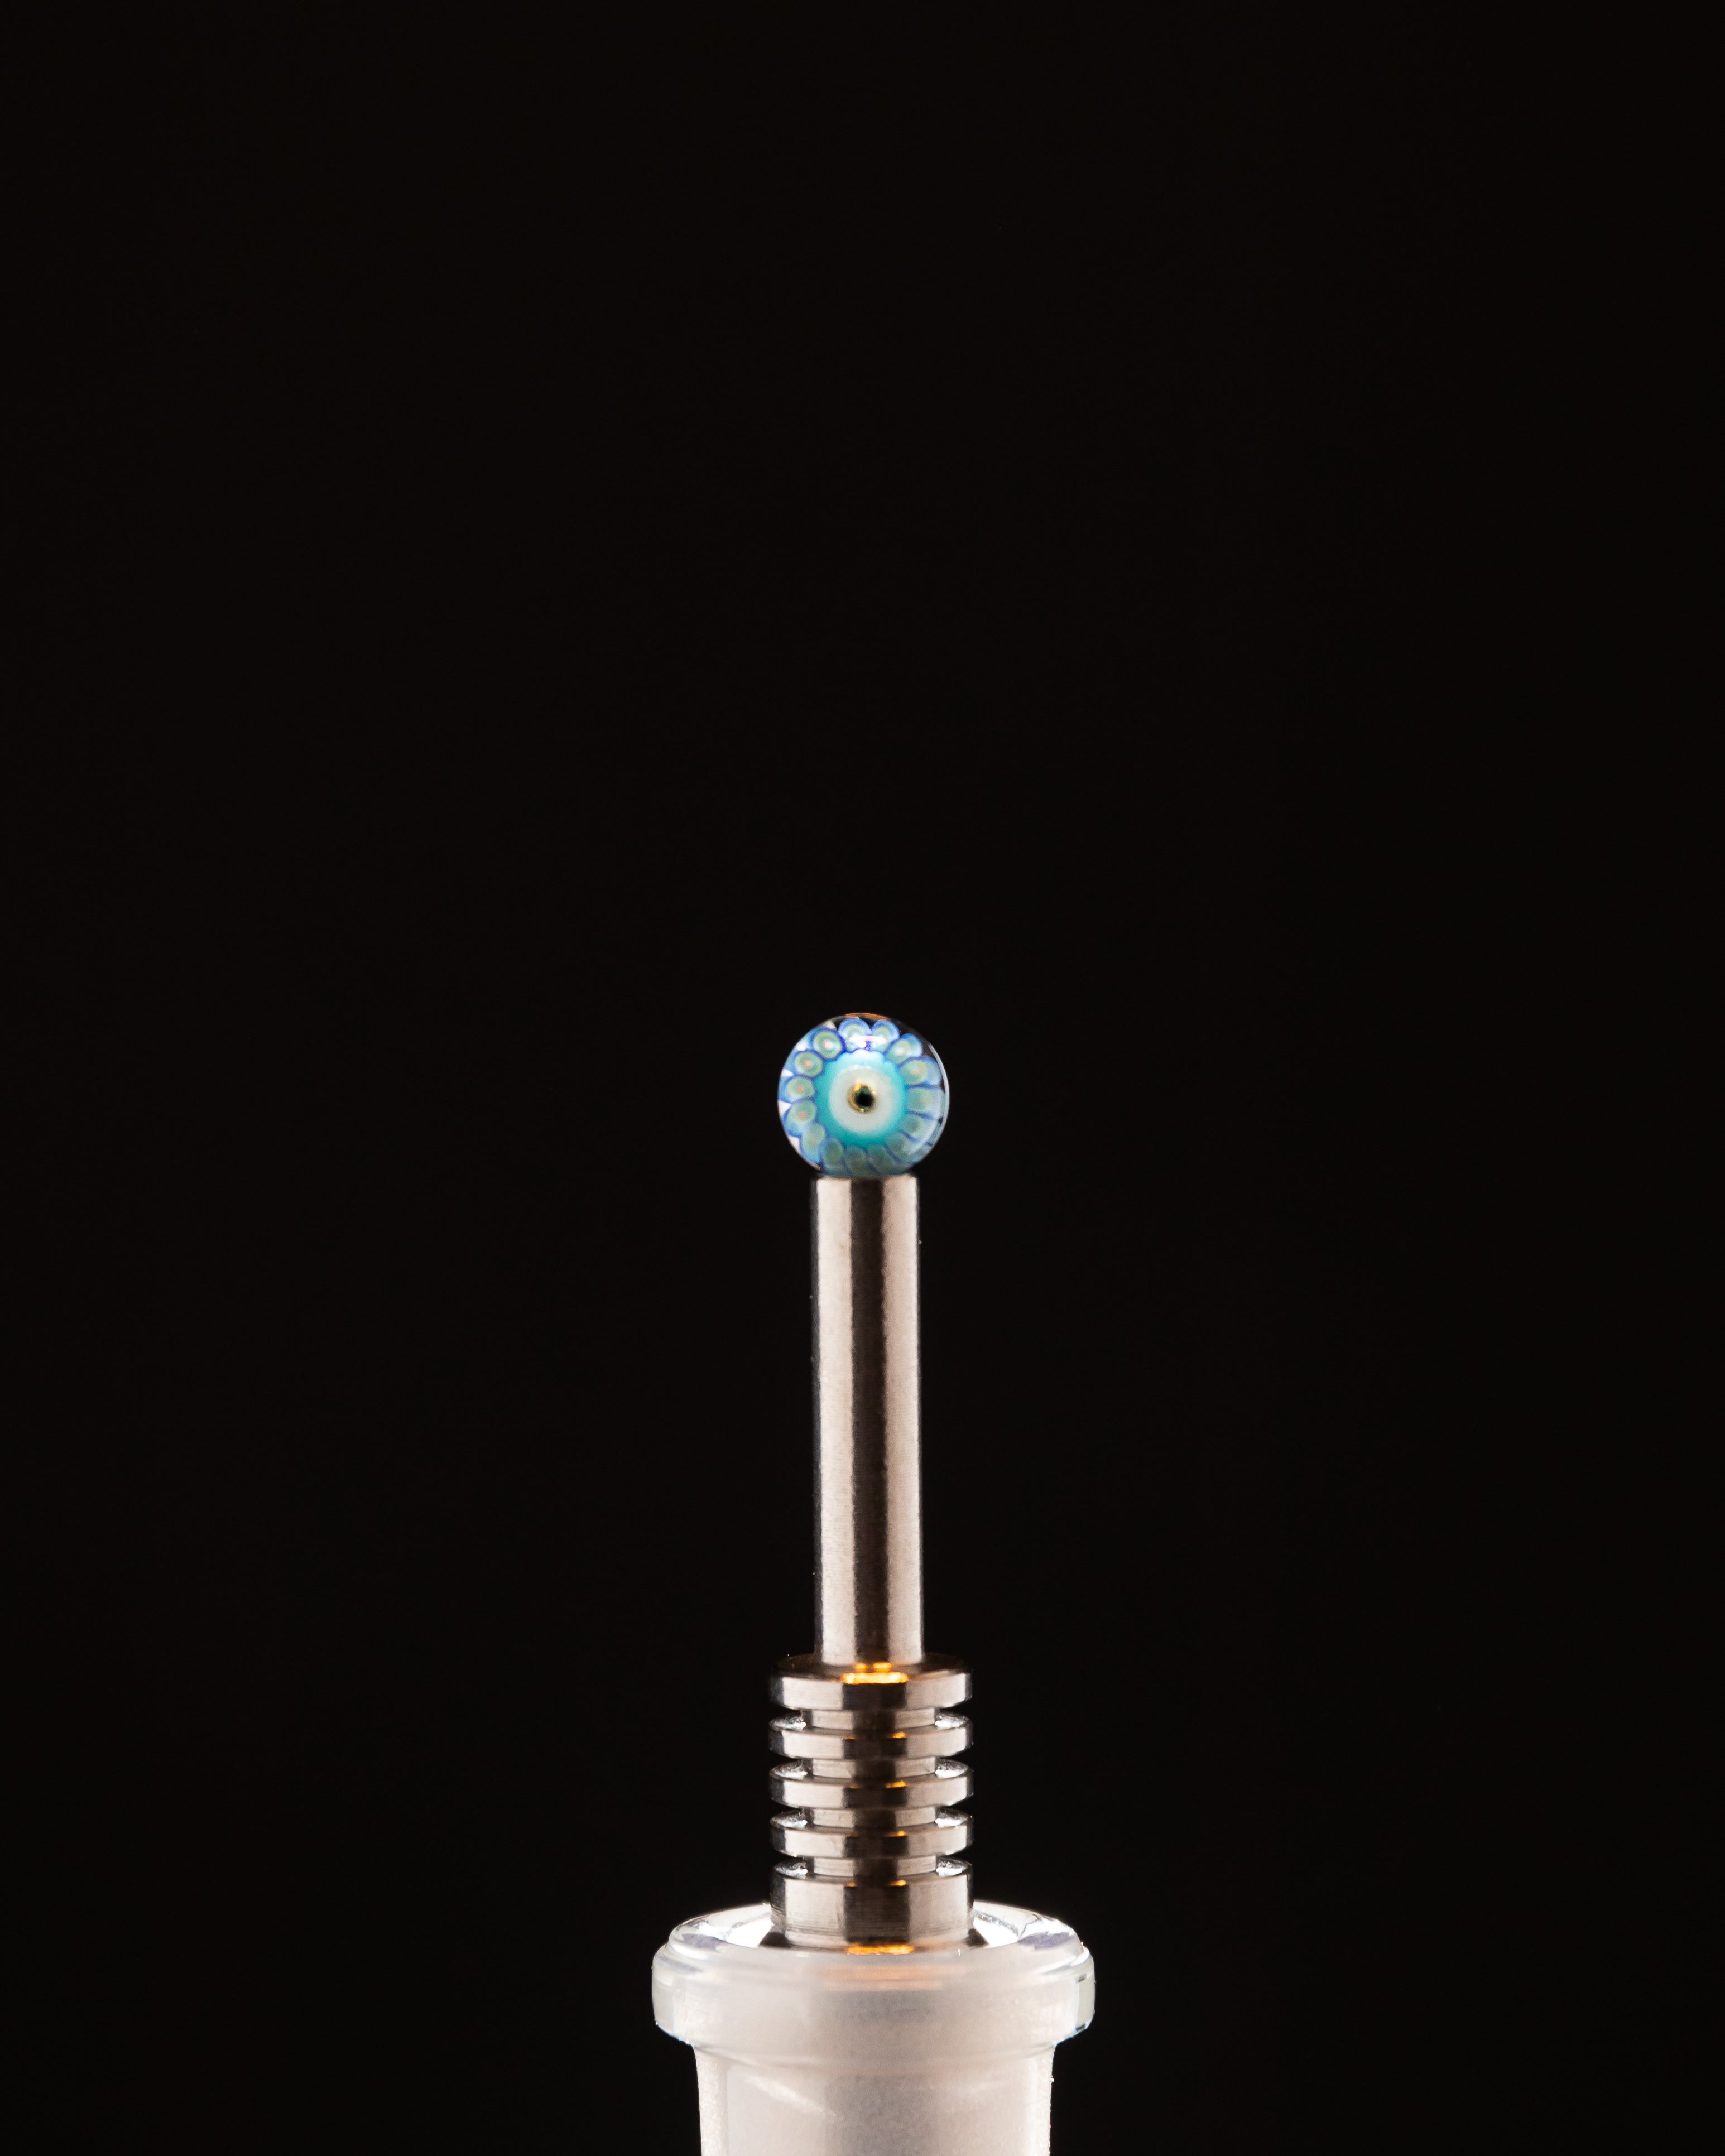 Steve Hulsebos Glass - Milli Terp Pearl 6mm (Blue Burst)